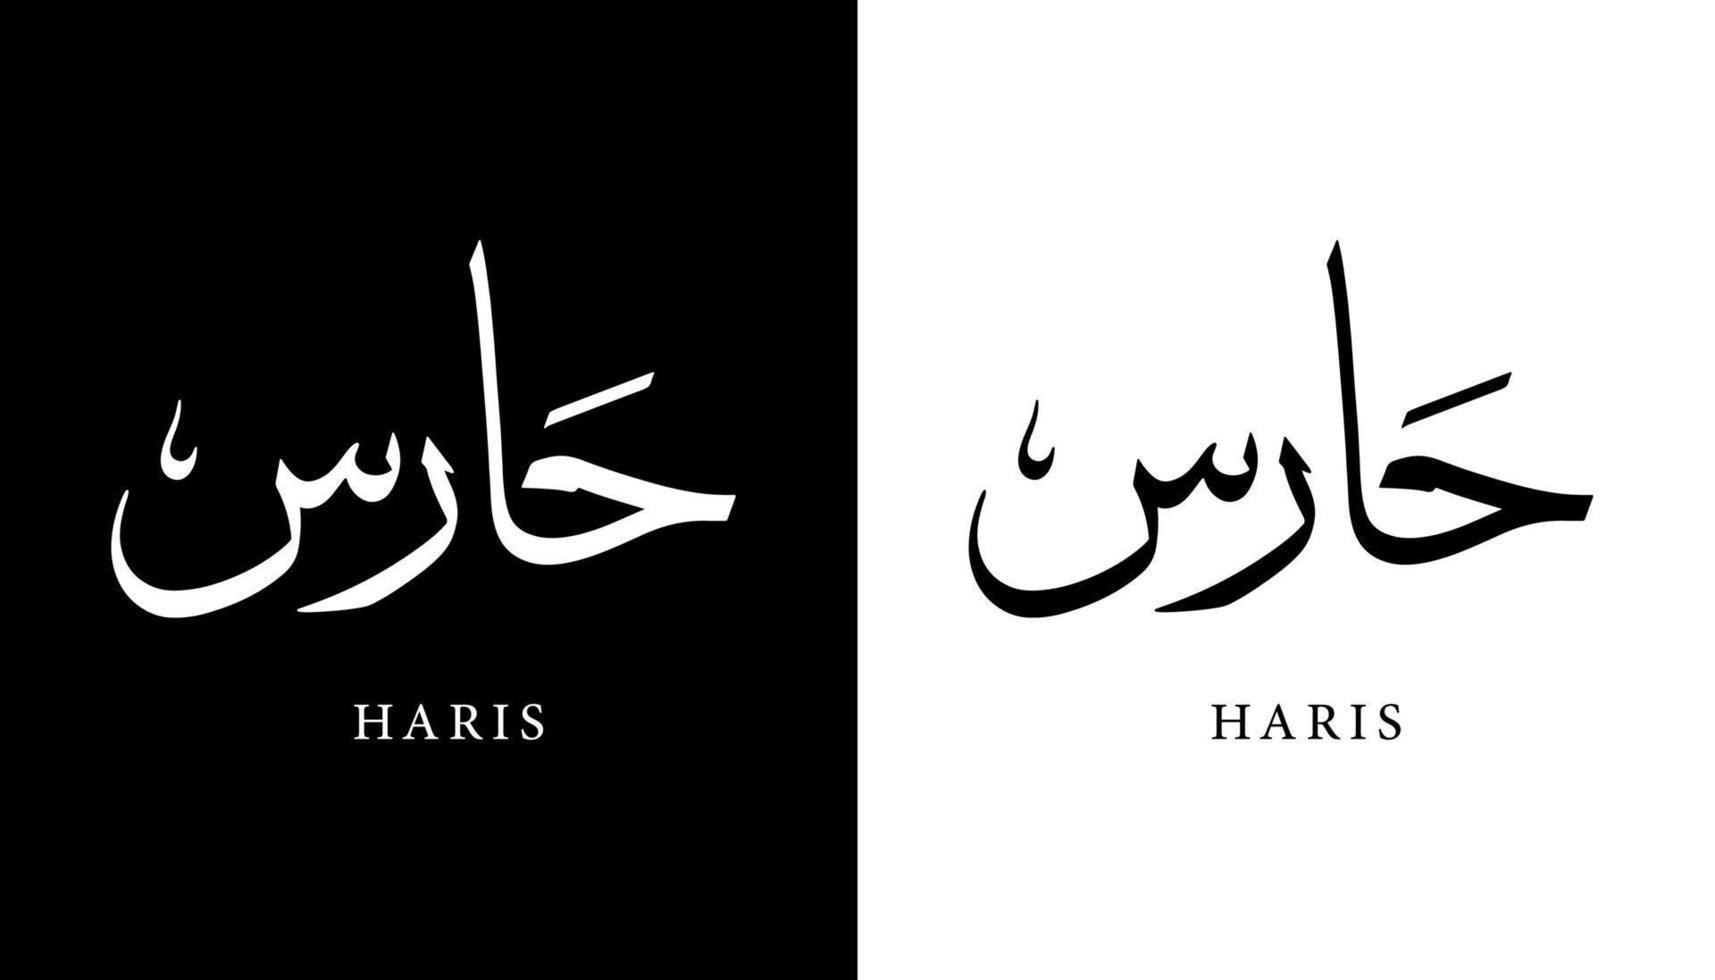 nome della calligrafia araba tradotto 'haris' lettere arabe alfabeto font lettering logo islamico illustrazione vettoriale